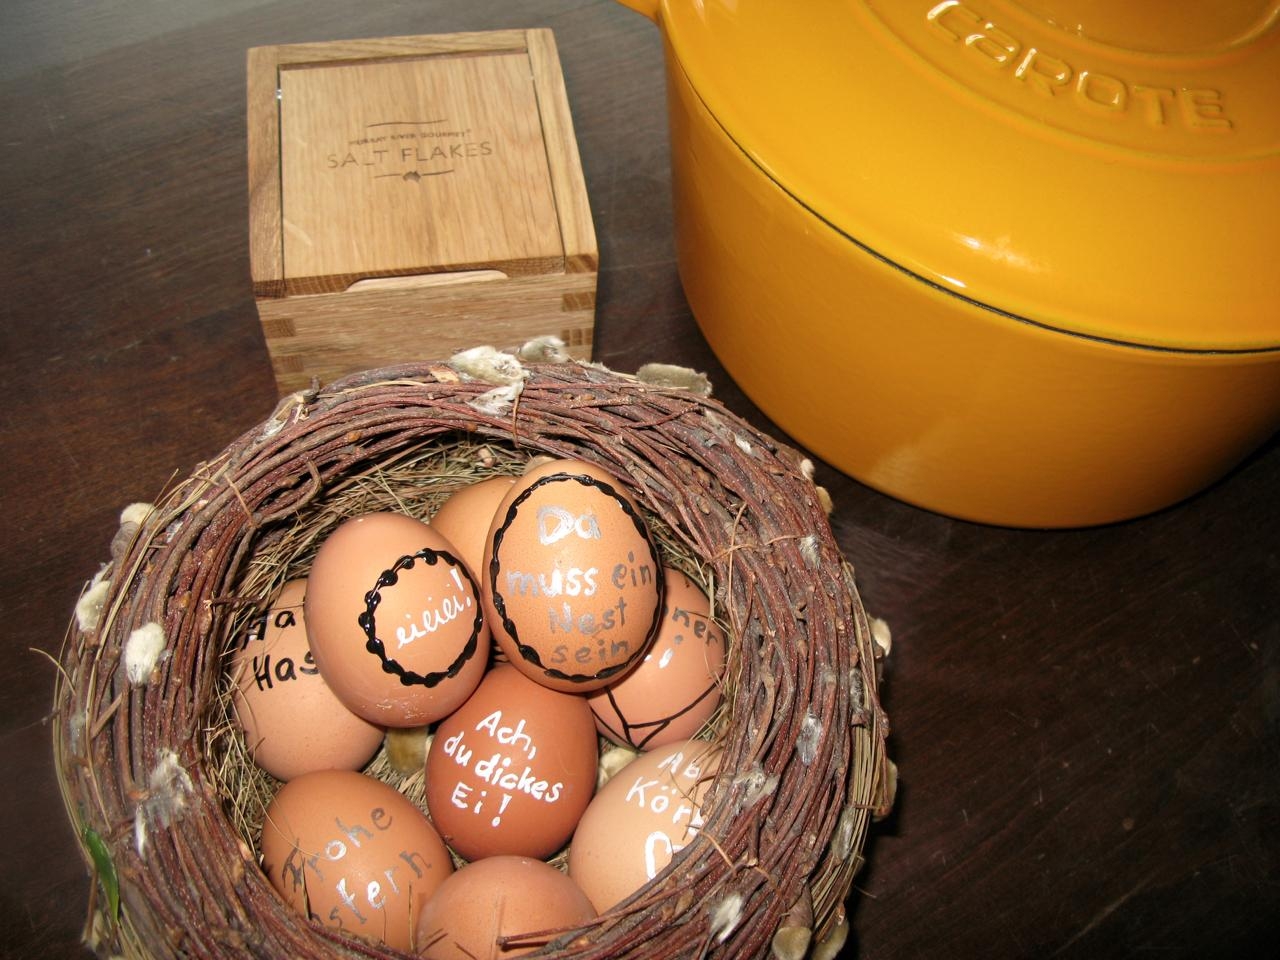 Beim #eierfärben sind wir Puristen. Das Ei bleibt natur, aber es wird verziert, dieses Jahr in Schwarz, Weiß und Silber.